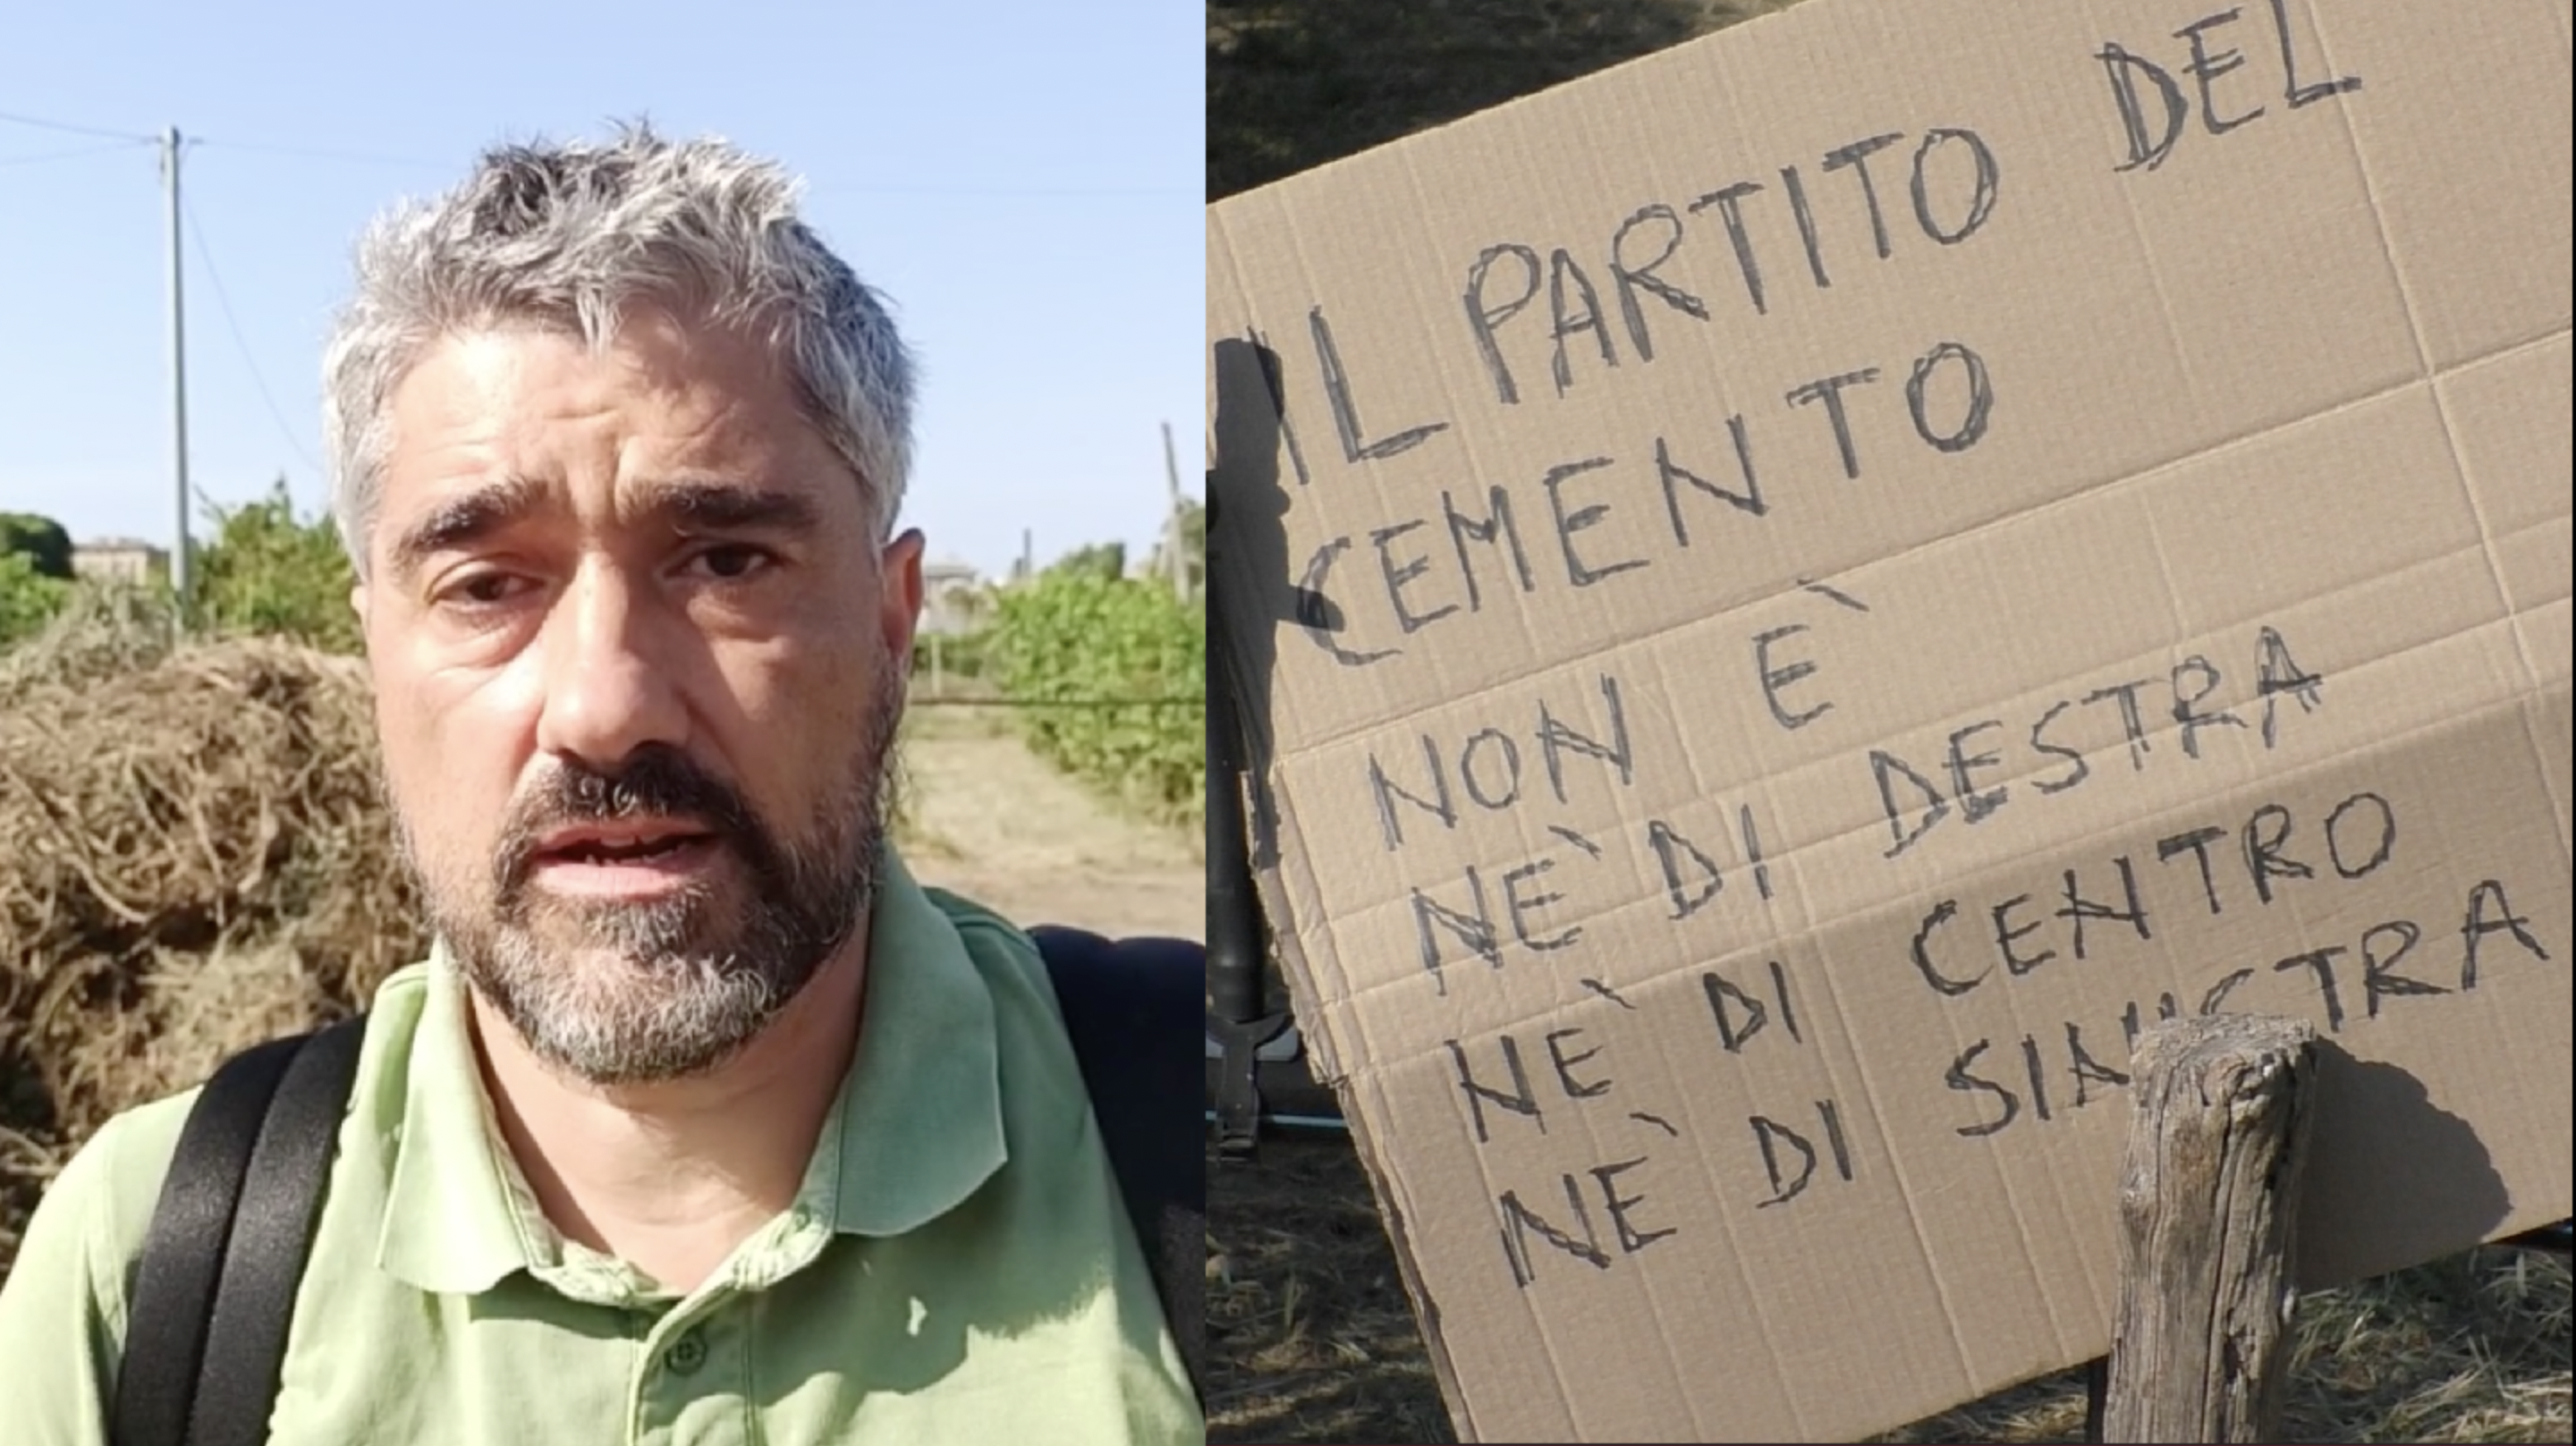 La protesta sul lungo Entella: "Stop alla diga Perfigli"